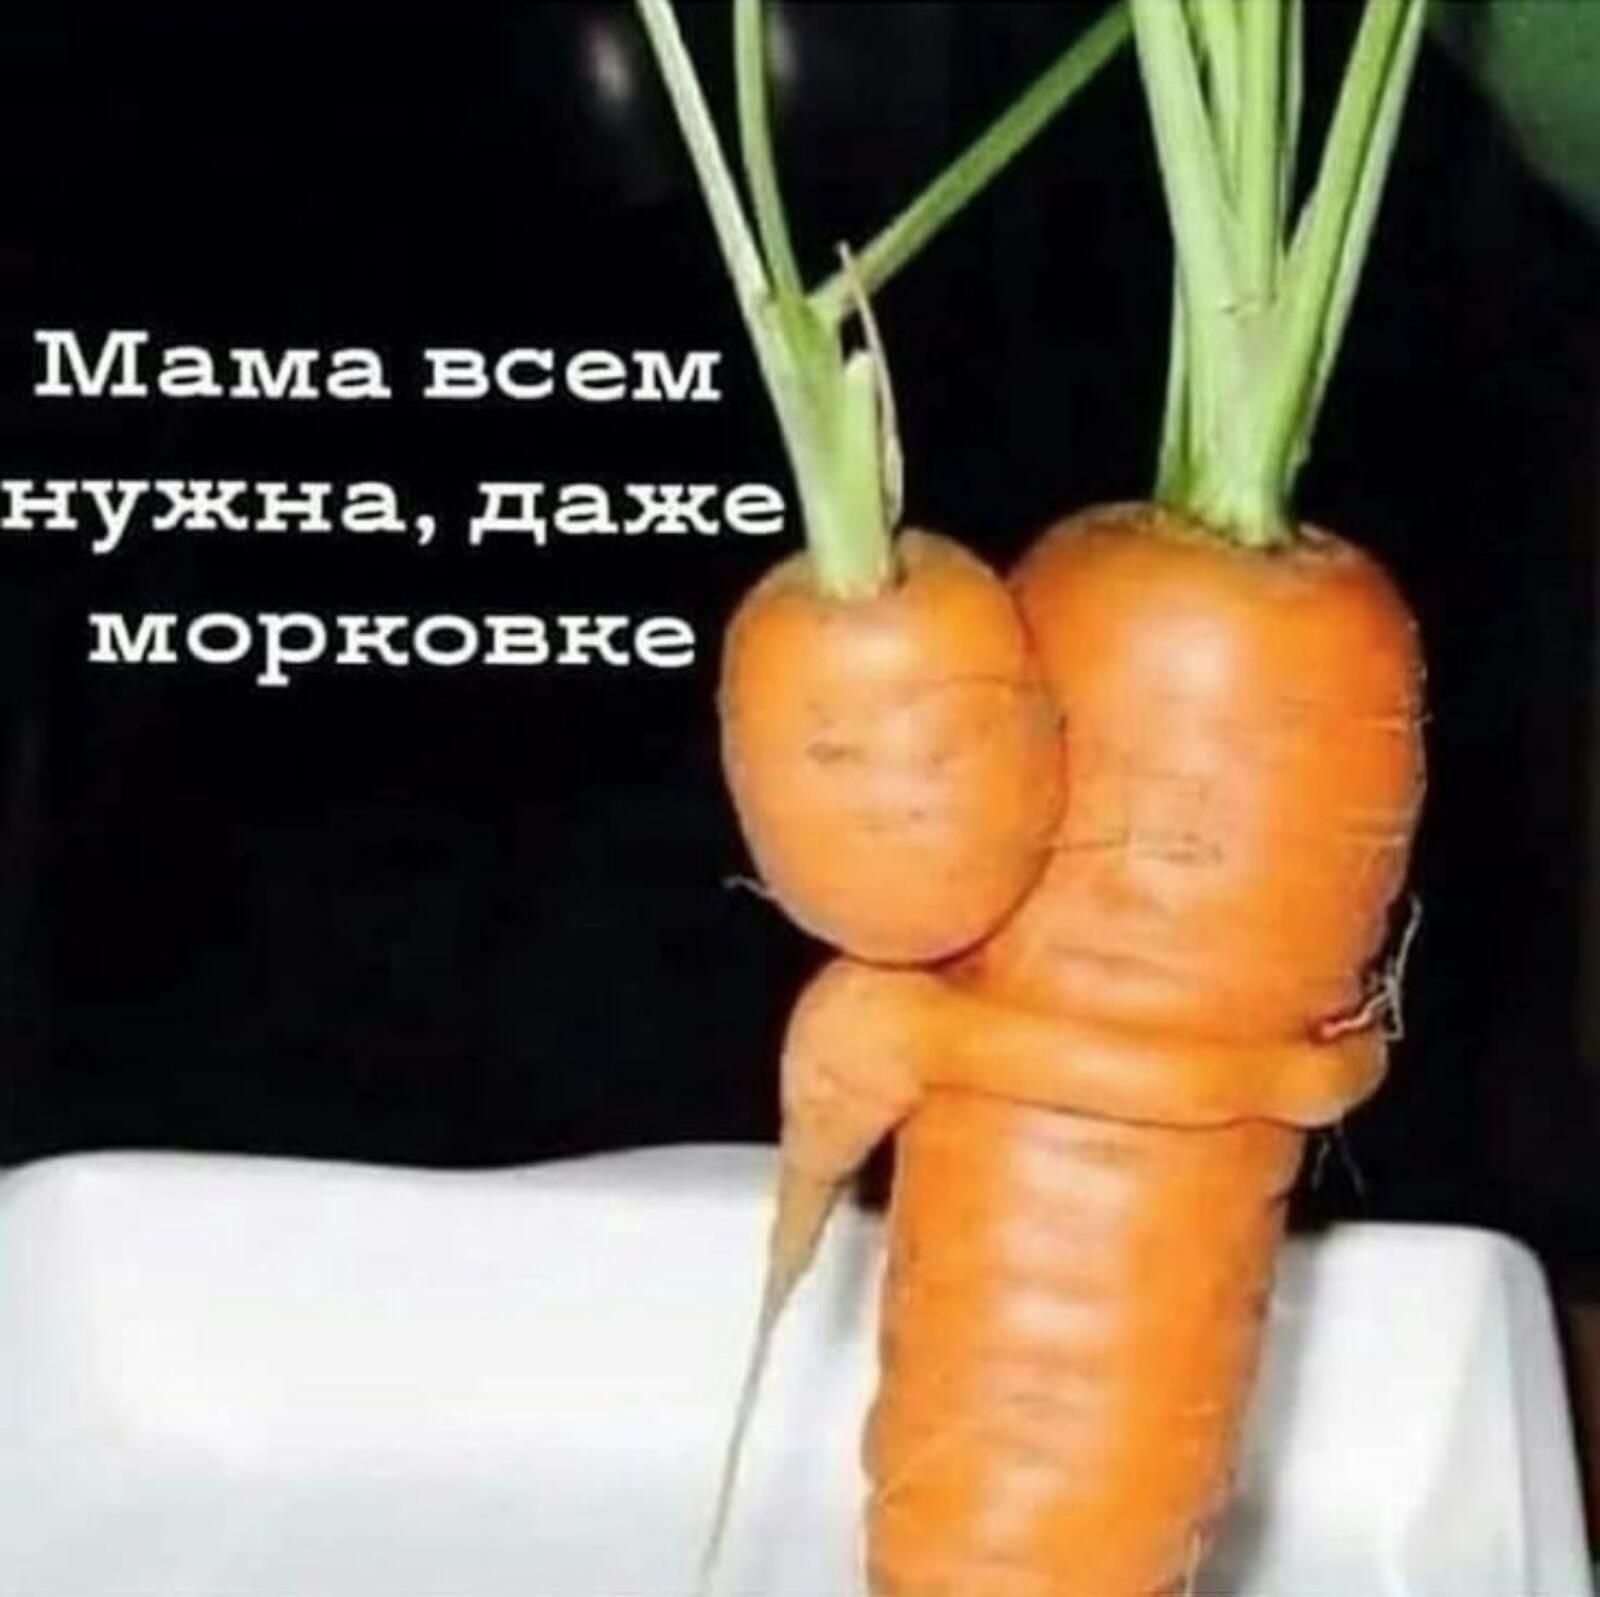 Мама всем нужна даже морковка